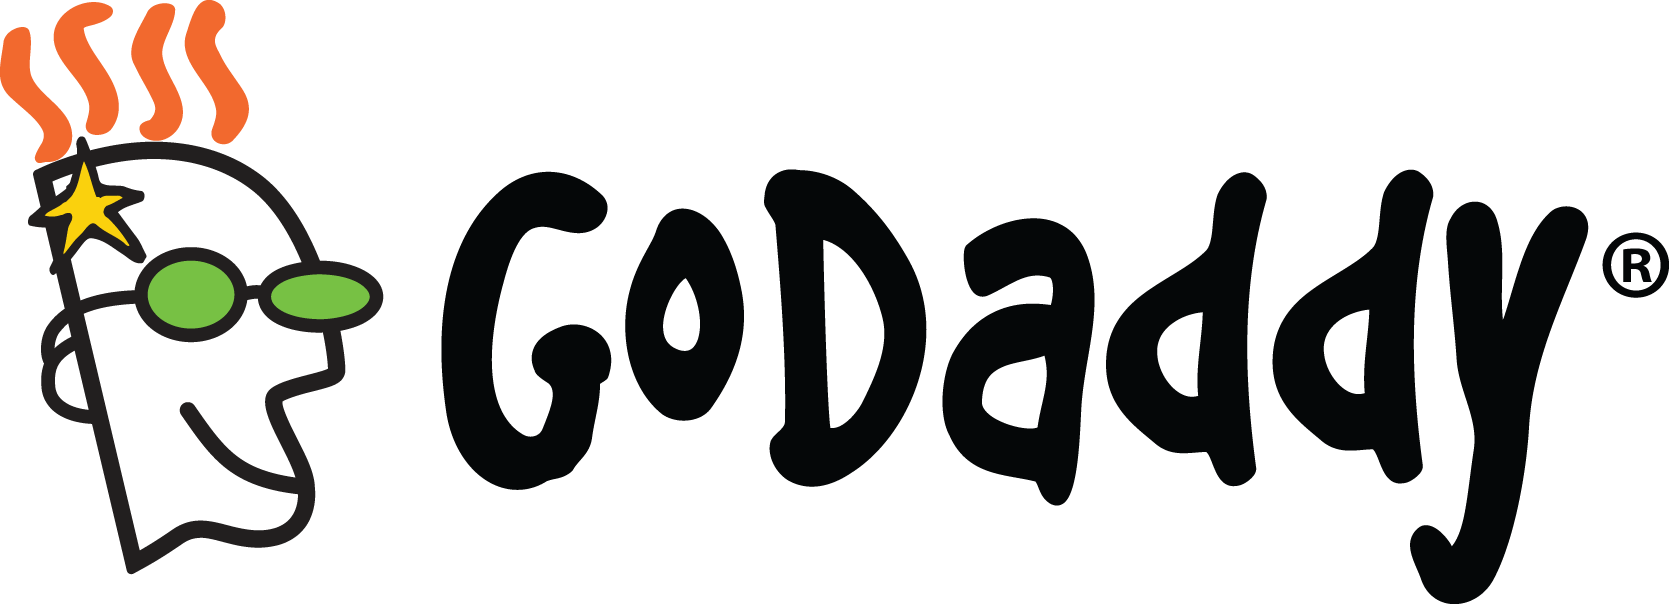 Godaddy Logo - godaddy-logo - UpdraftPlus